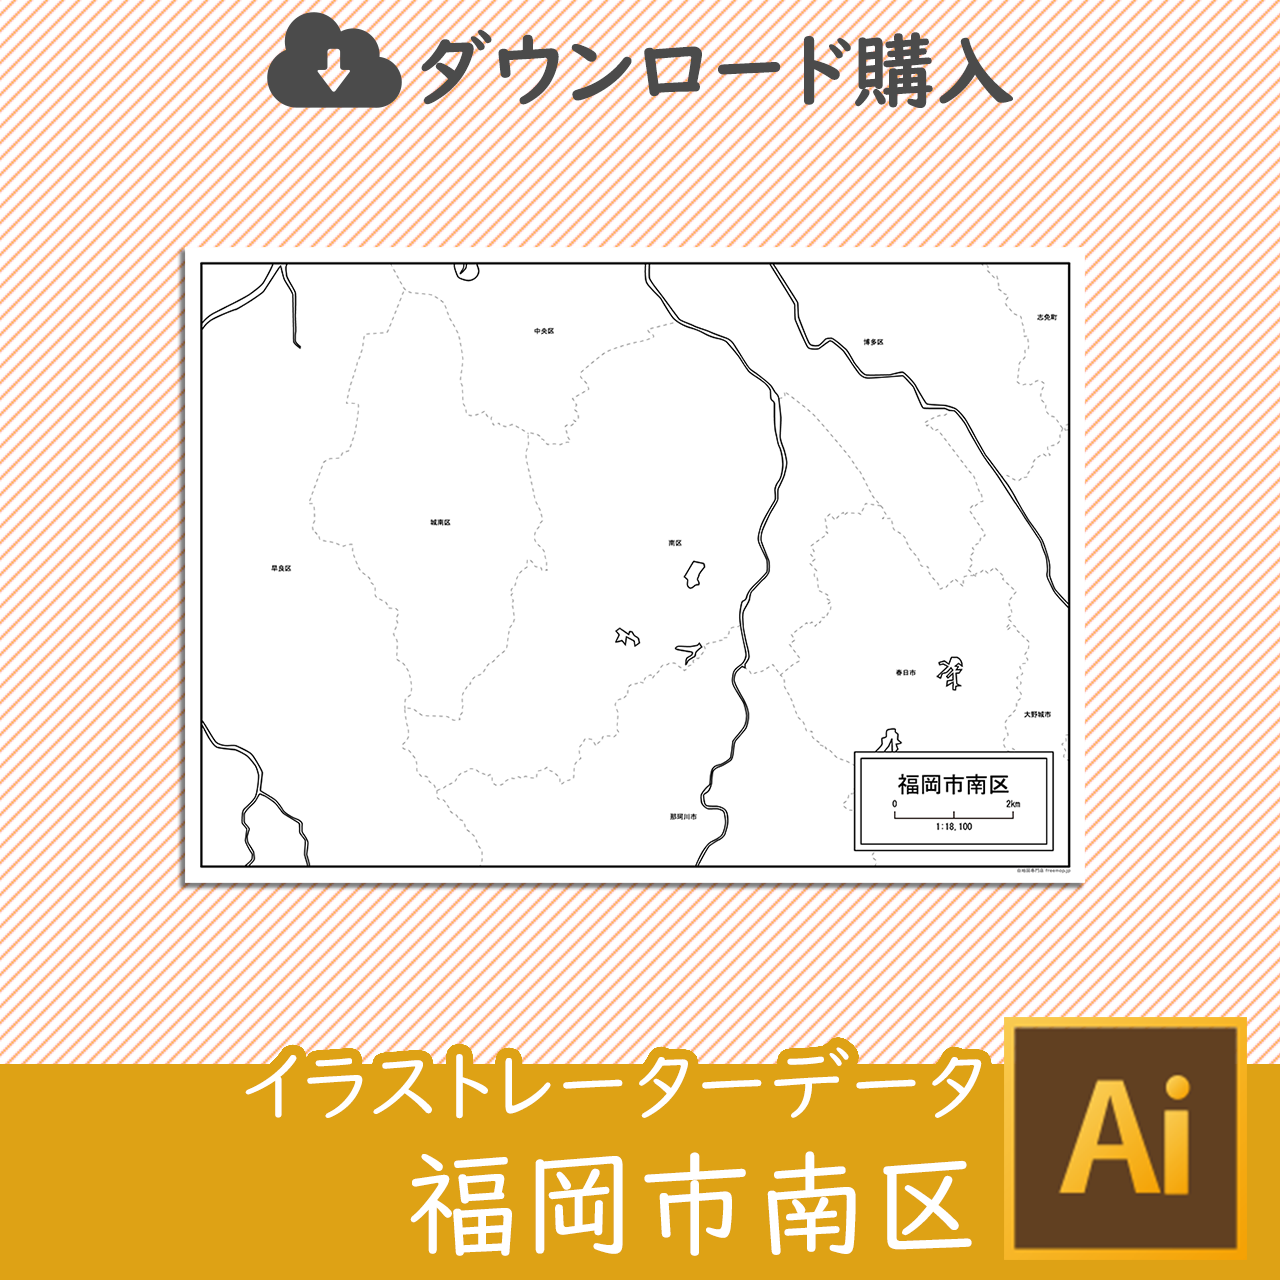 福岡市南区のaiデータのサムネイル画像